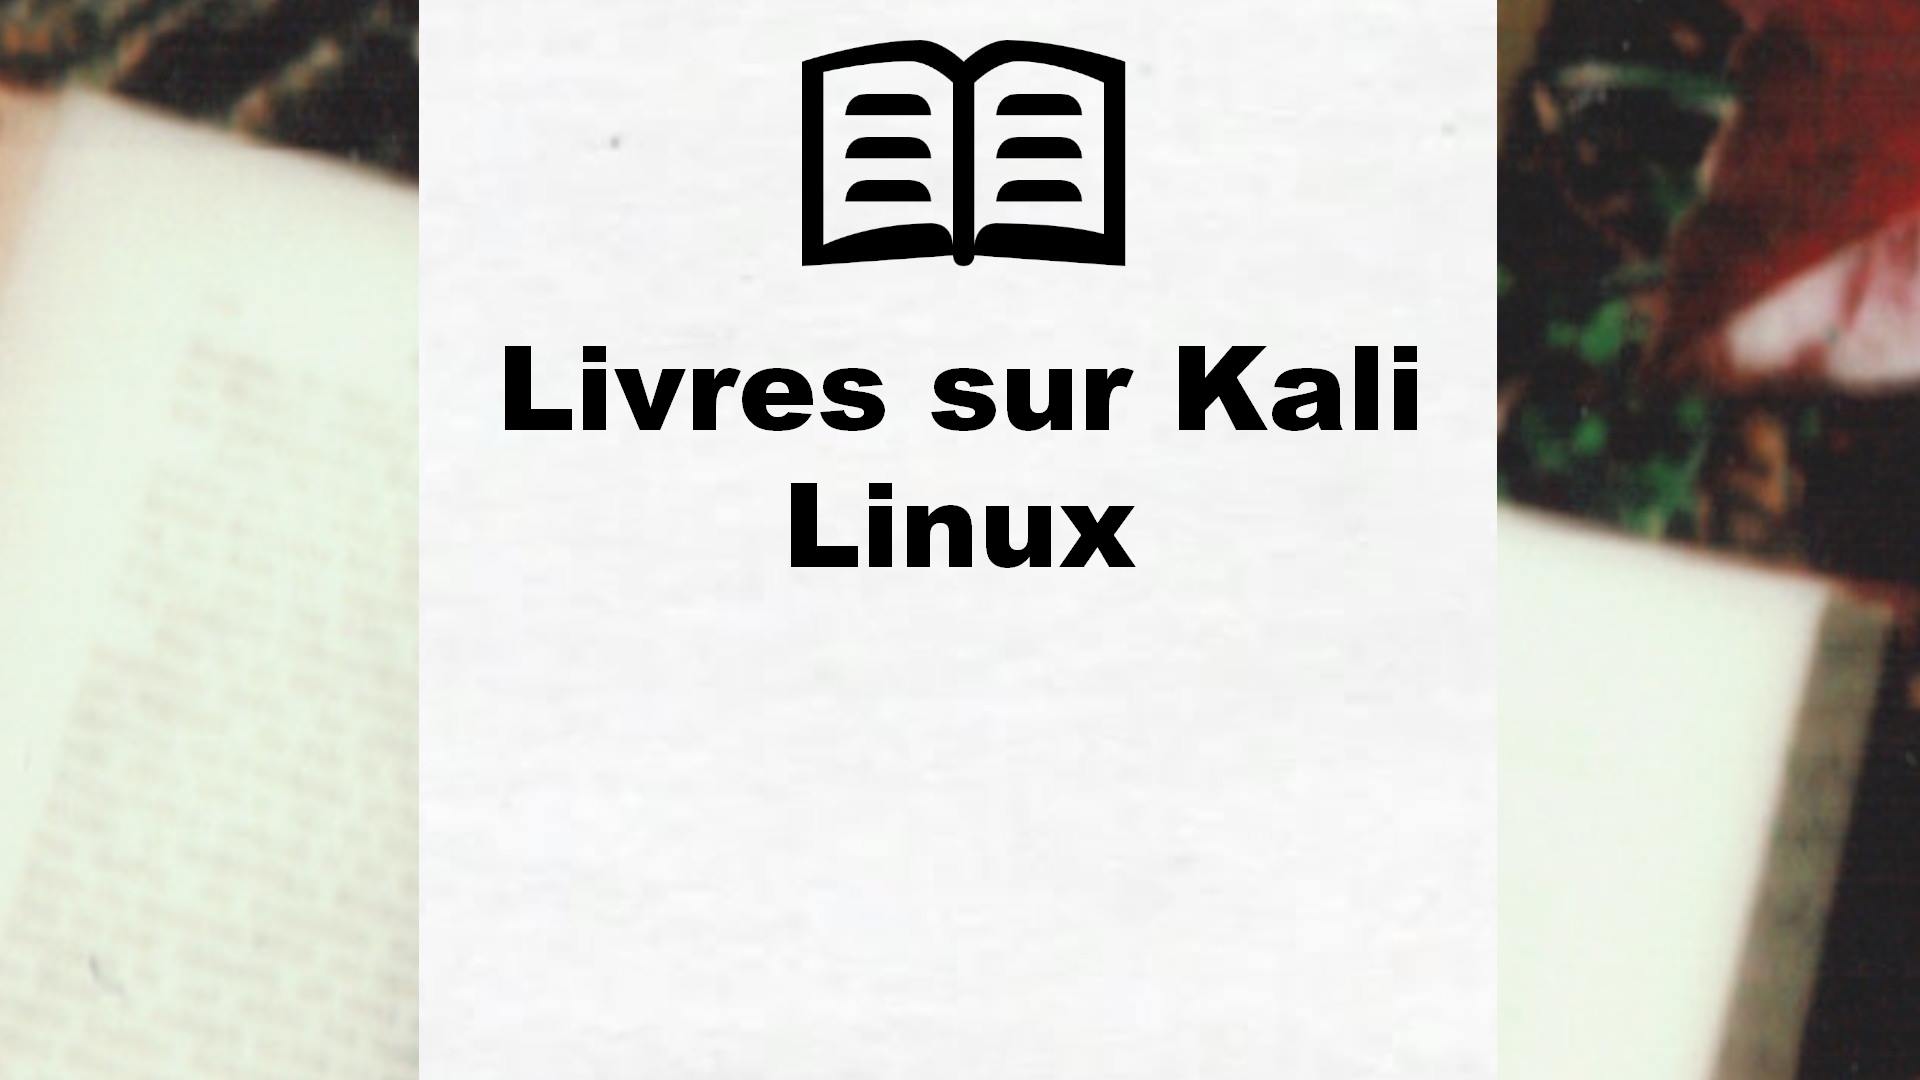 Livres sur Kali Linux